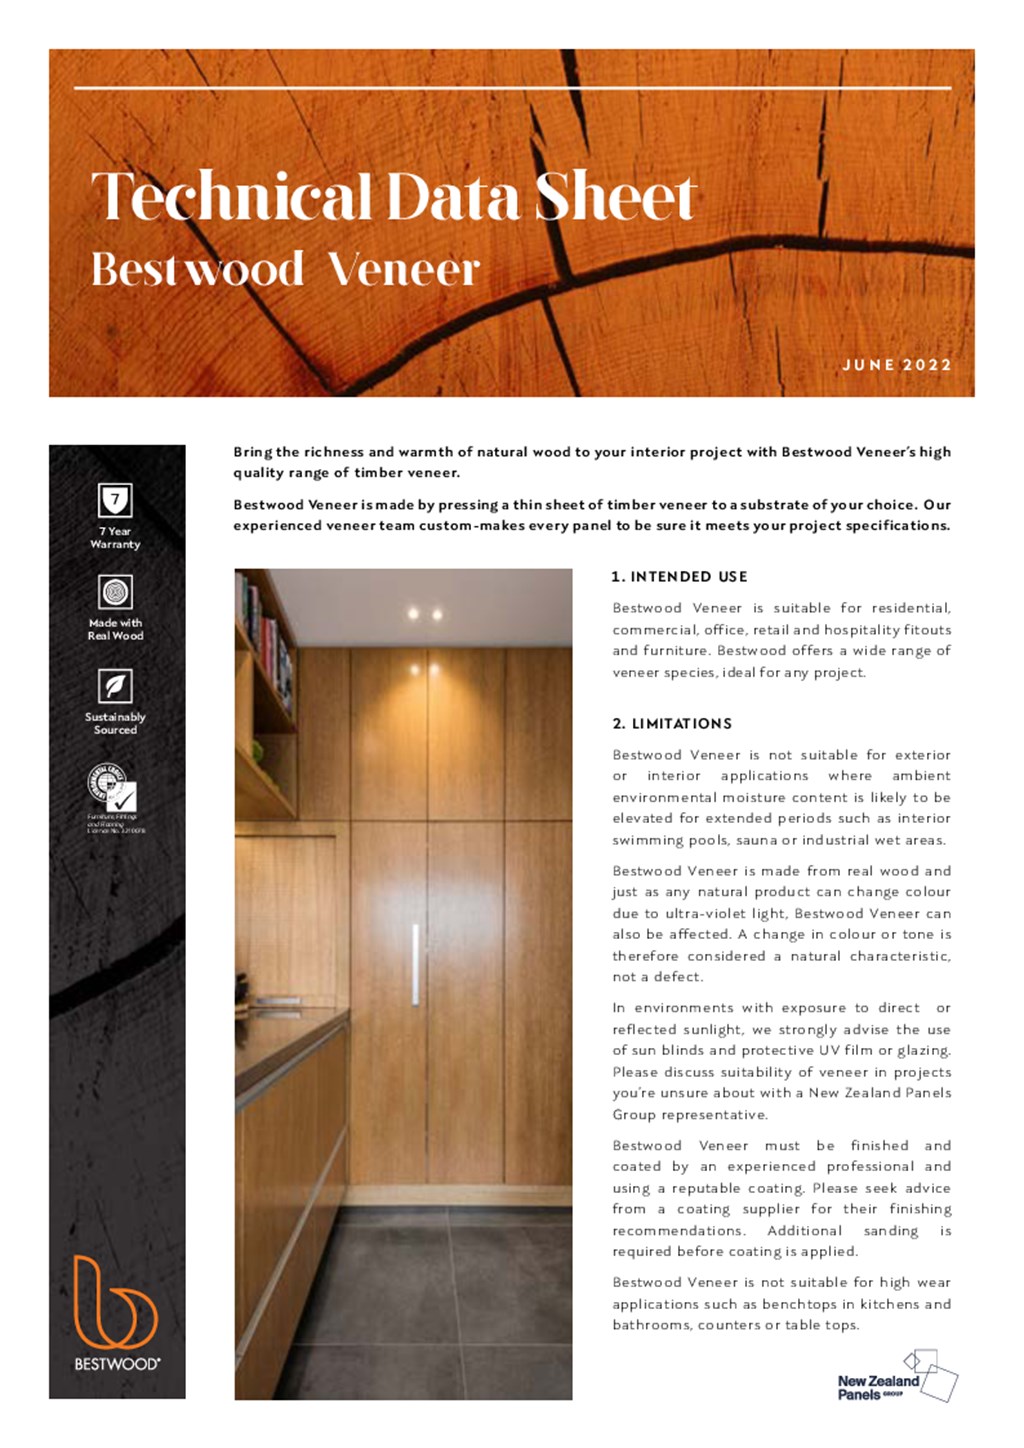 Bestwood Veneer Technical Data Sheet